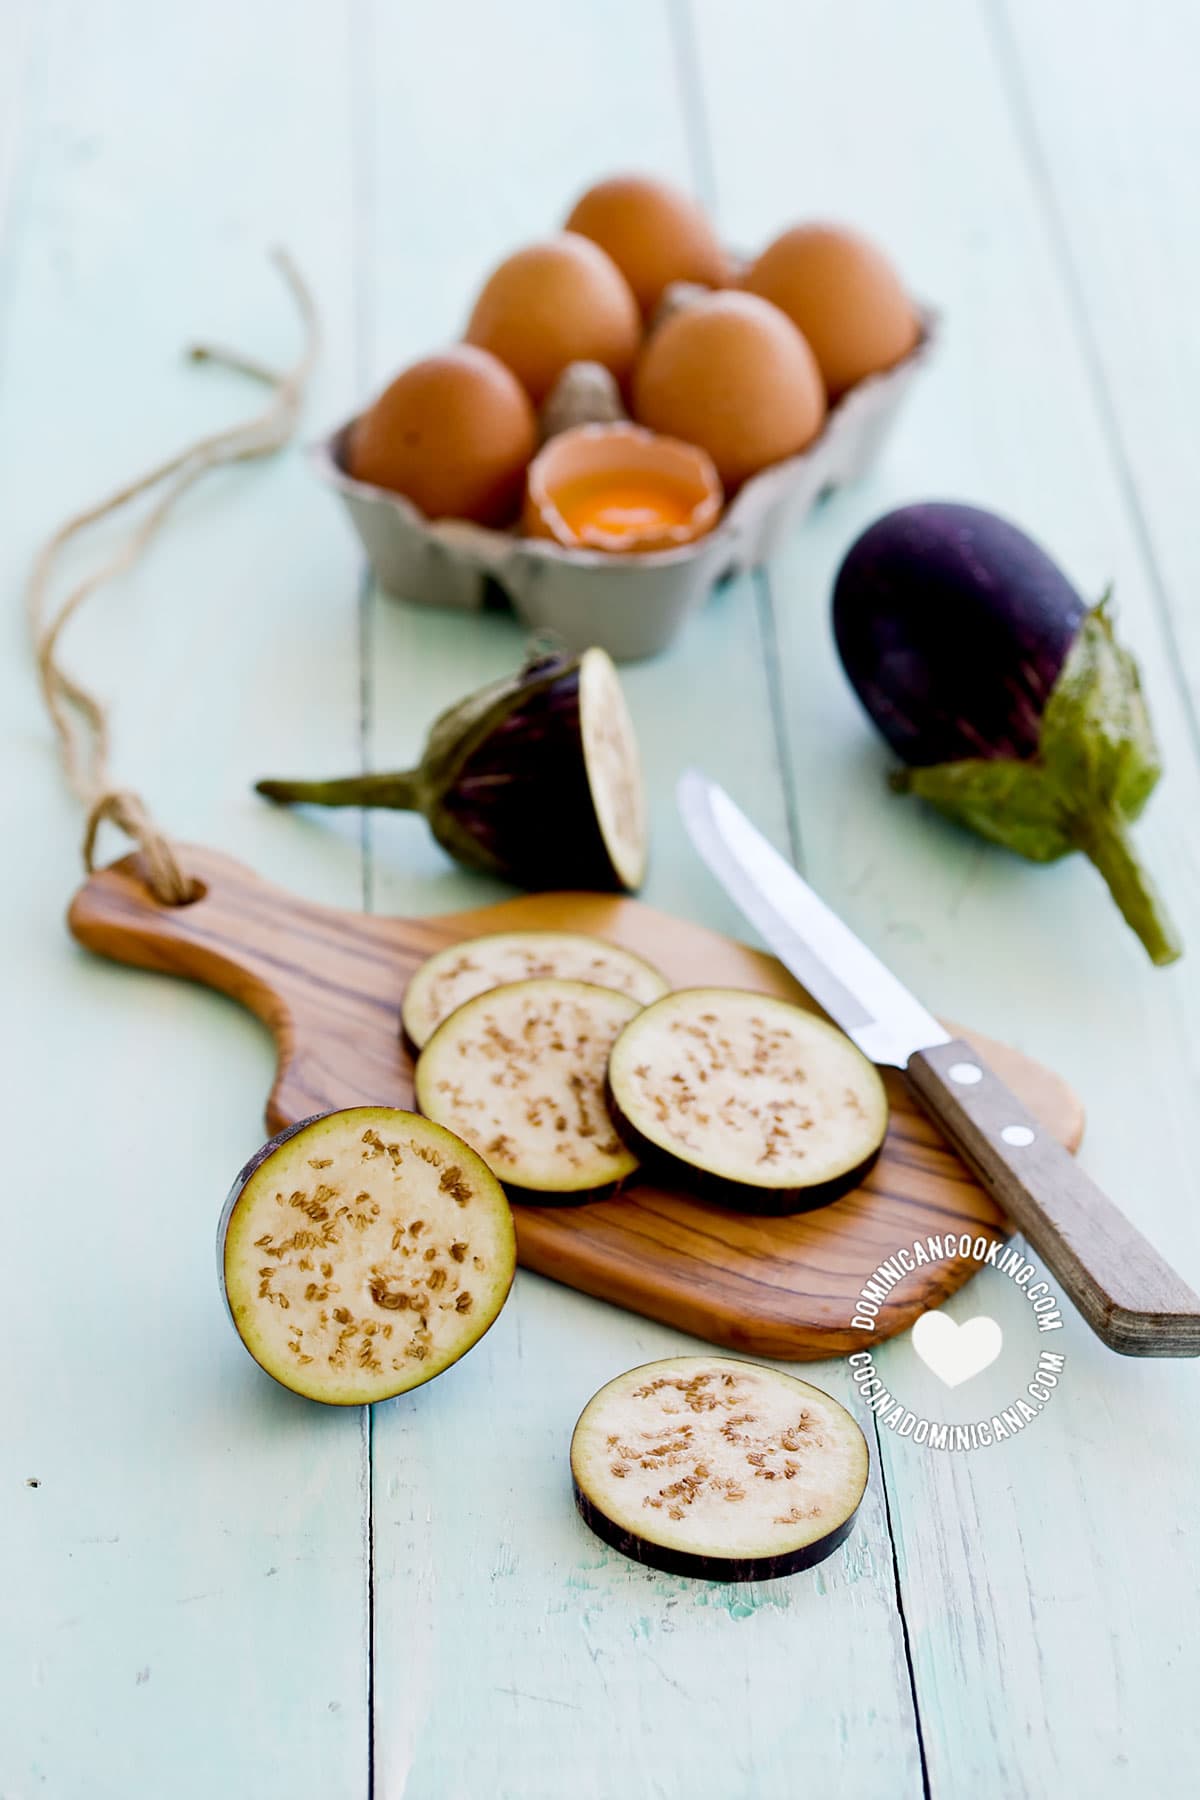 Ingredients for Torrejas de Berenjenas (Fried Eggplants)